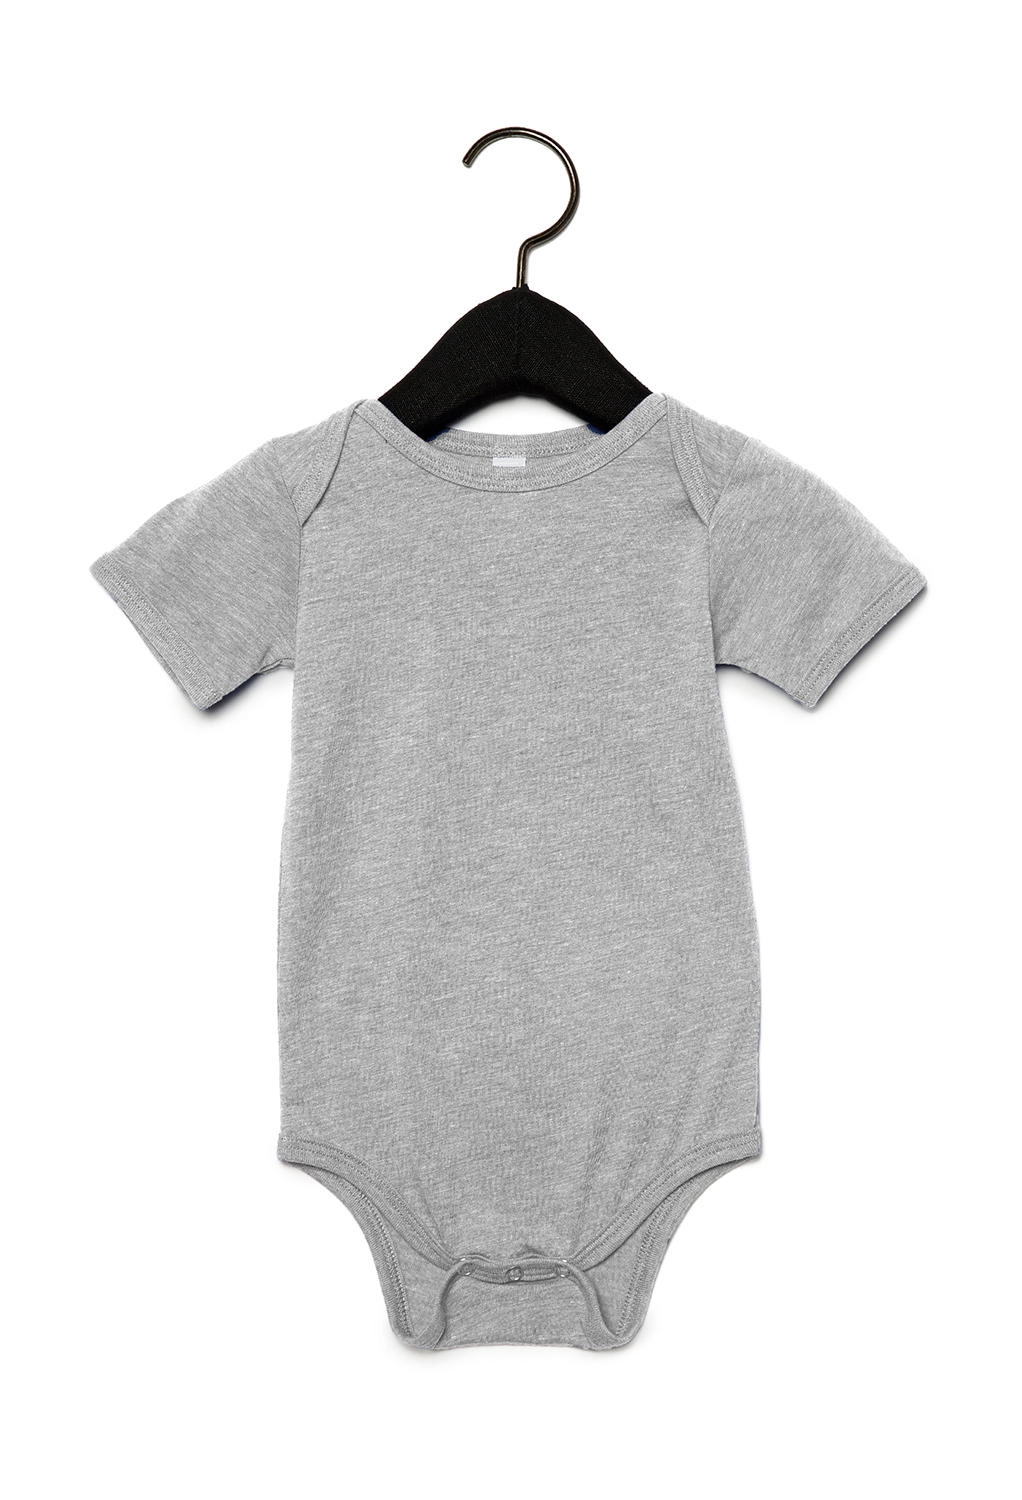 Baby Triblend Short Sleeve Onesie zum Besticken und Bedrucken in der Farbe Grey Triblend mit Ihren Logo, Schriftzug oder Motiv.